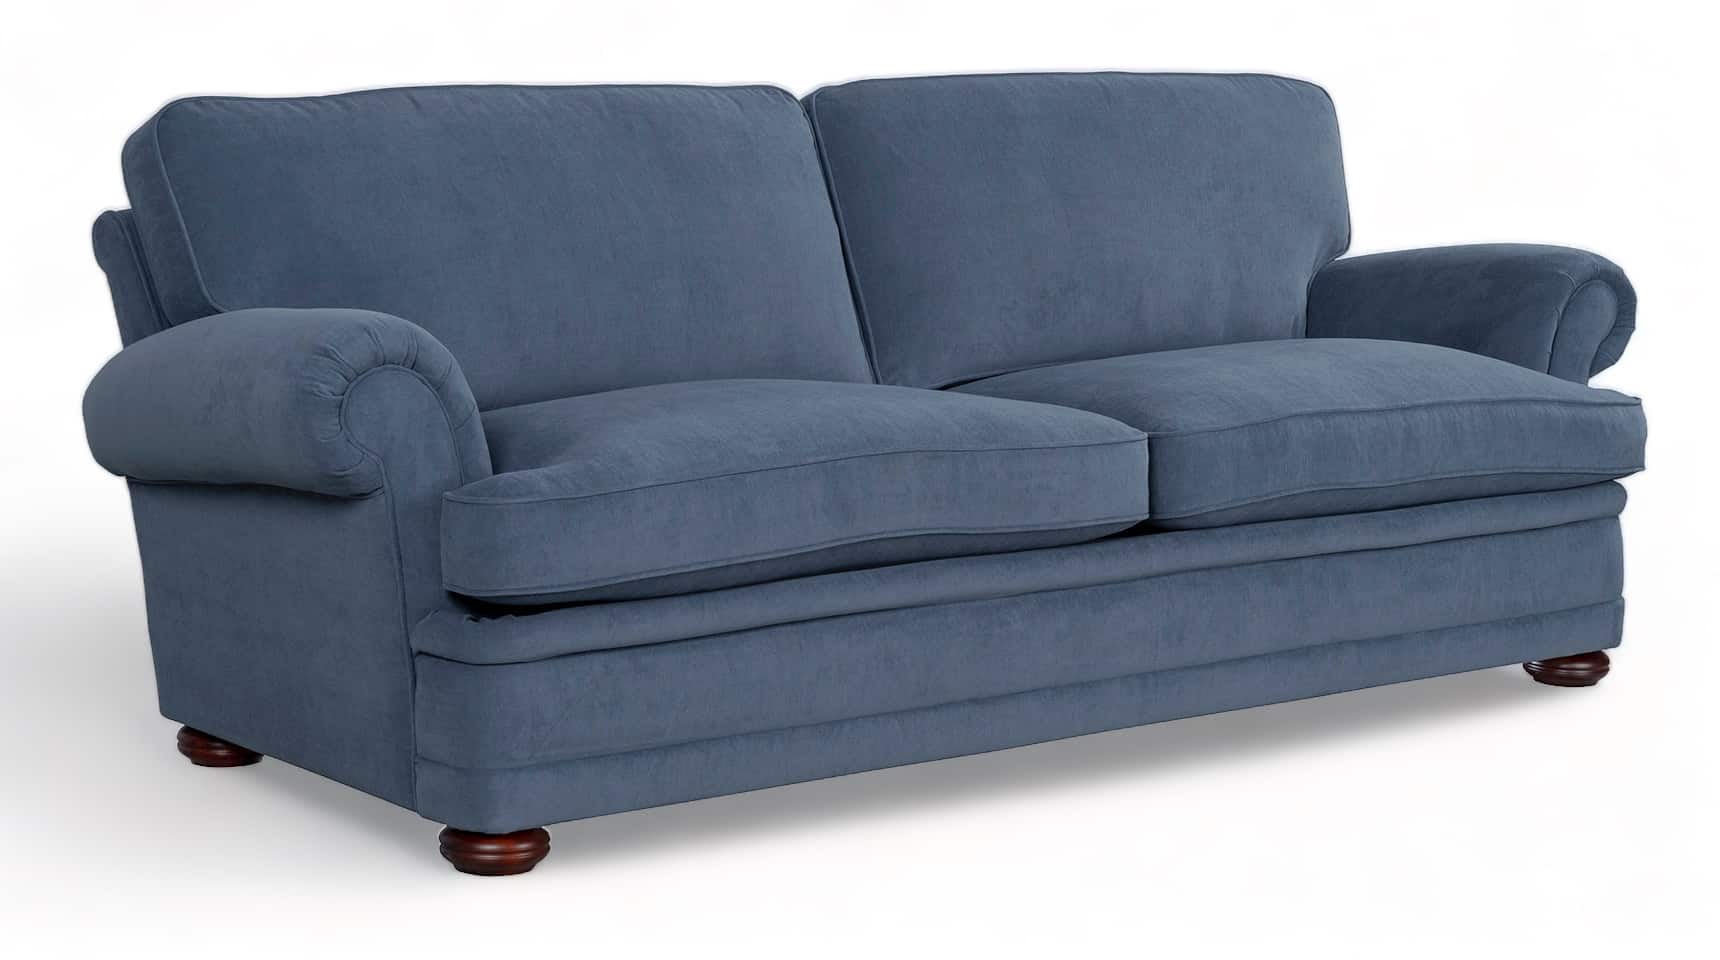 Dolke målbar enorm Oxford sofa i Engelsk stil | Tidsløs elegance | Se mere